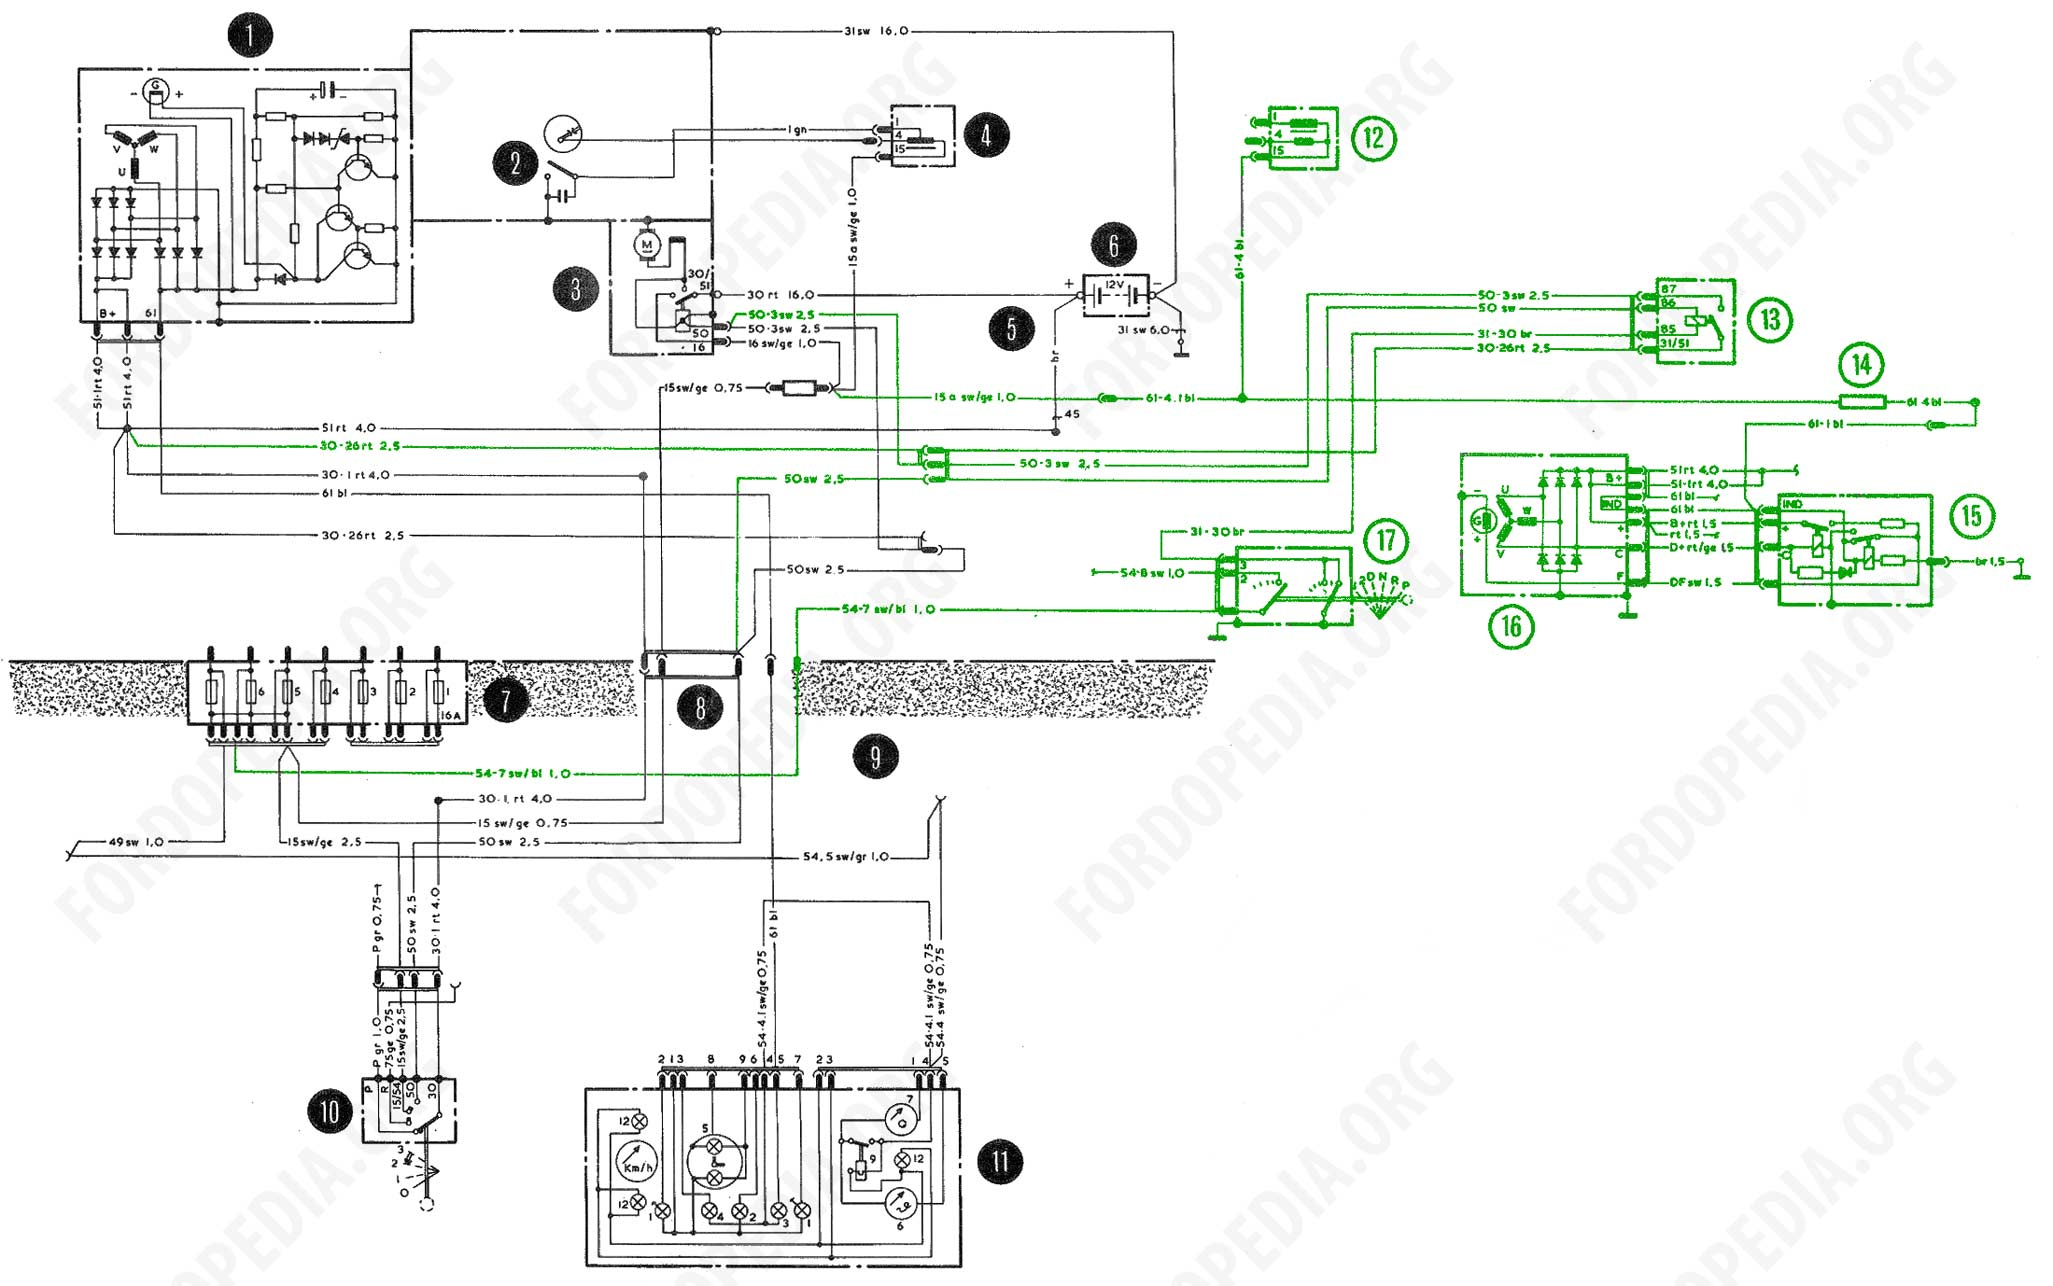 Ignition Circuit Wiring - Wiring Diagram Blog - Ford Ignition Coil Wiring Diagram